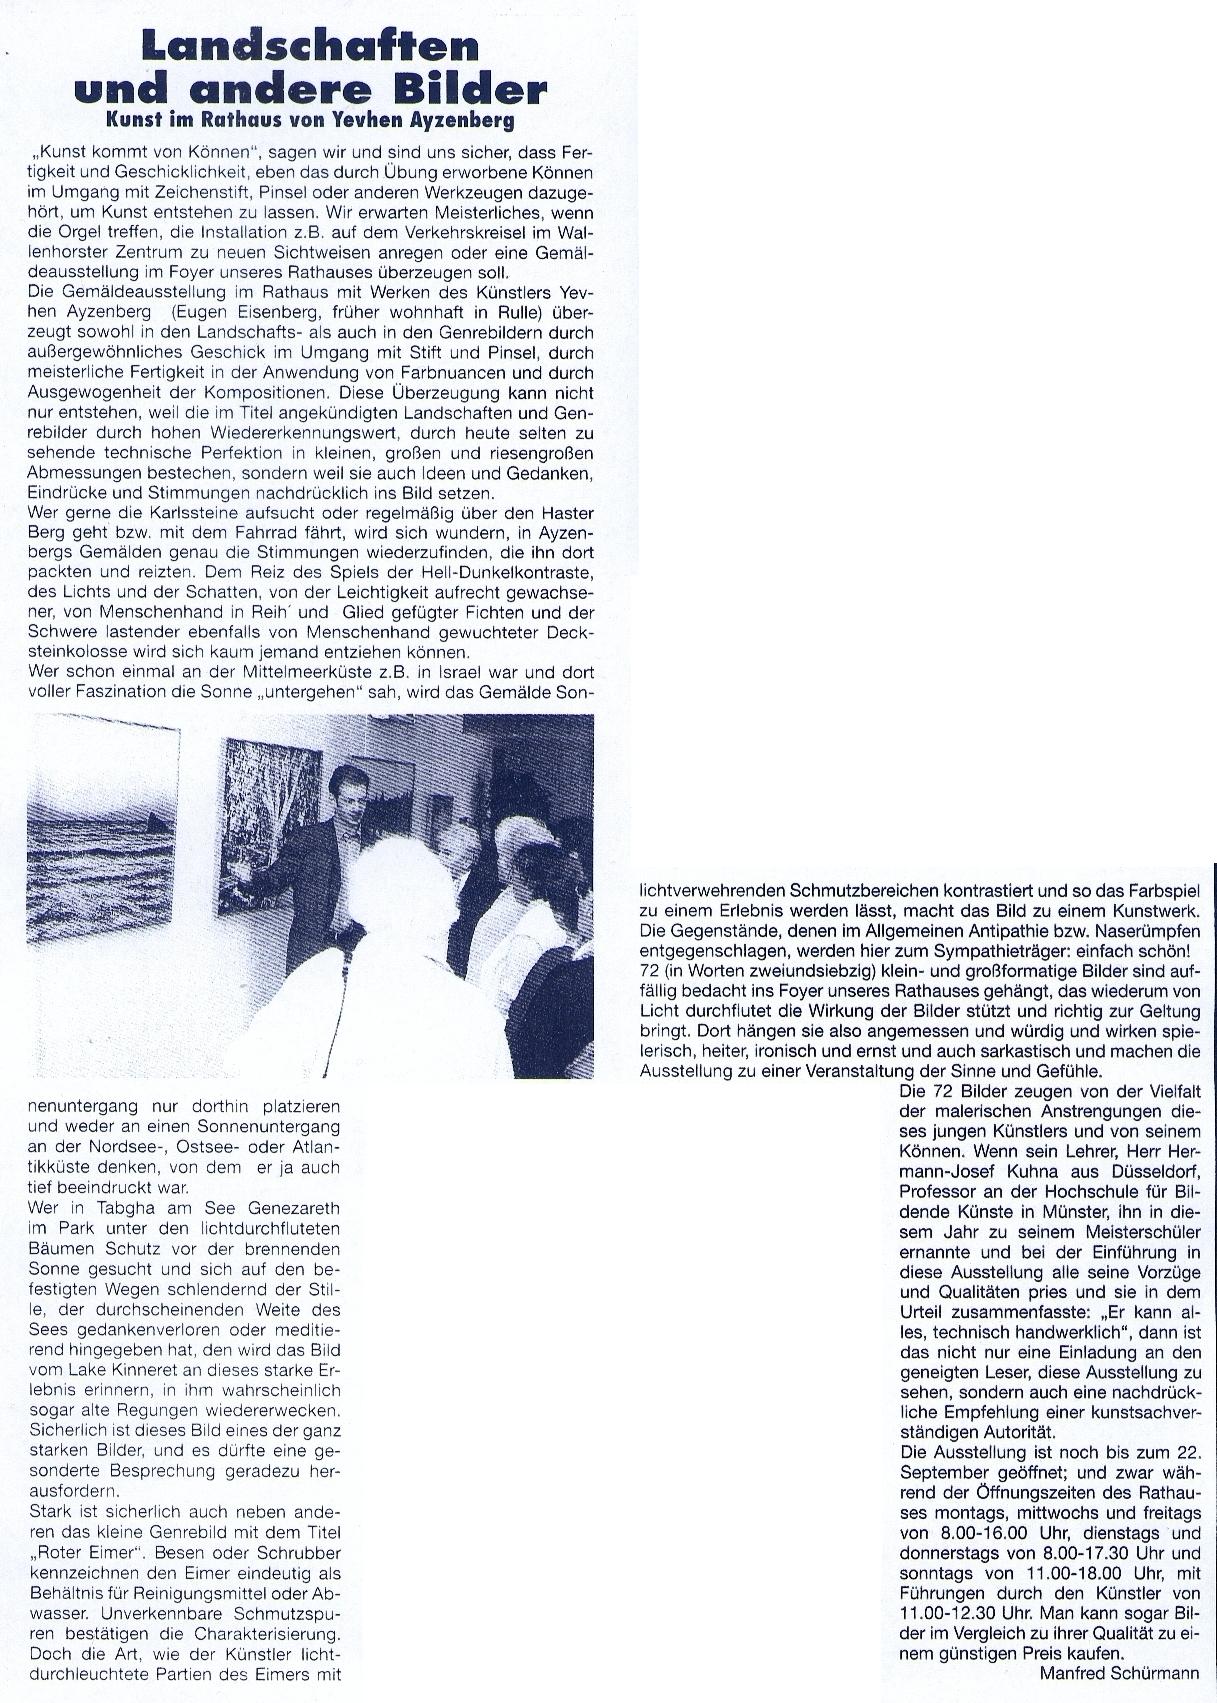 Bürger Echo vom 11.09.2002 (II)